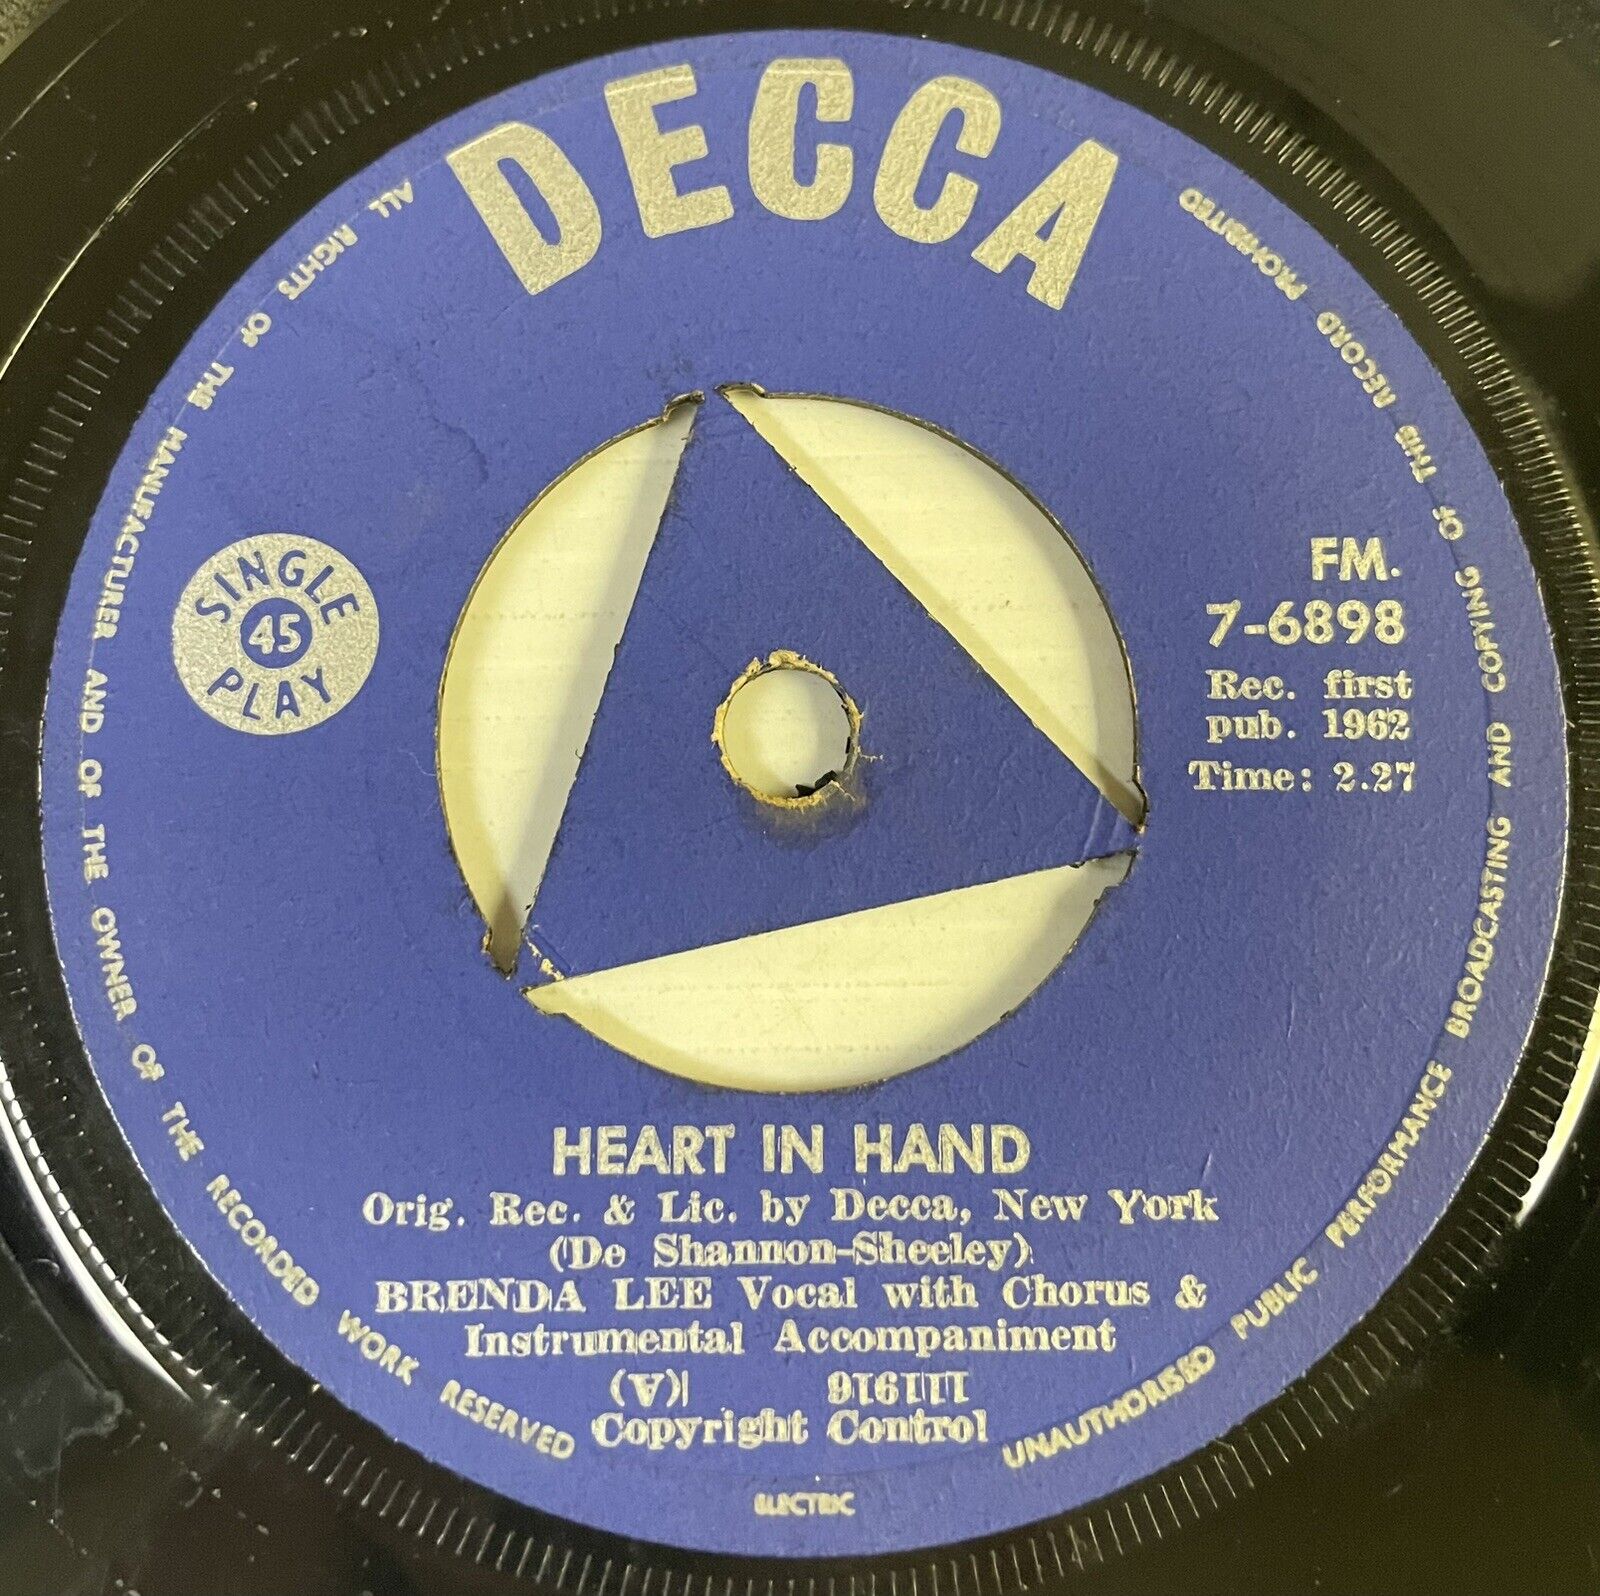 Brenda Lee Heart In Hand Vinyl Record 7” 45 RPM FM.7-6898 Decca 1962 SA